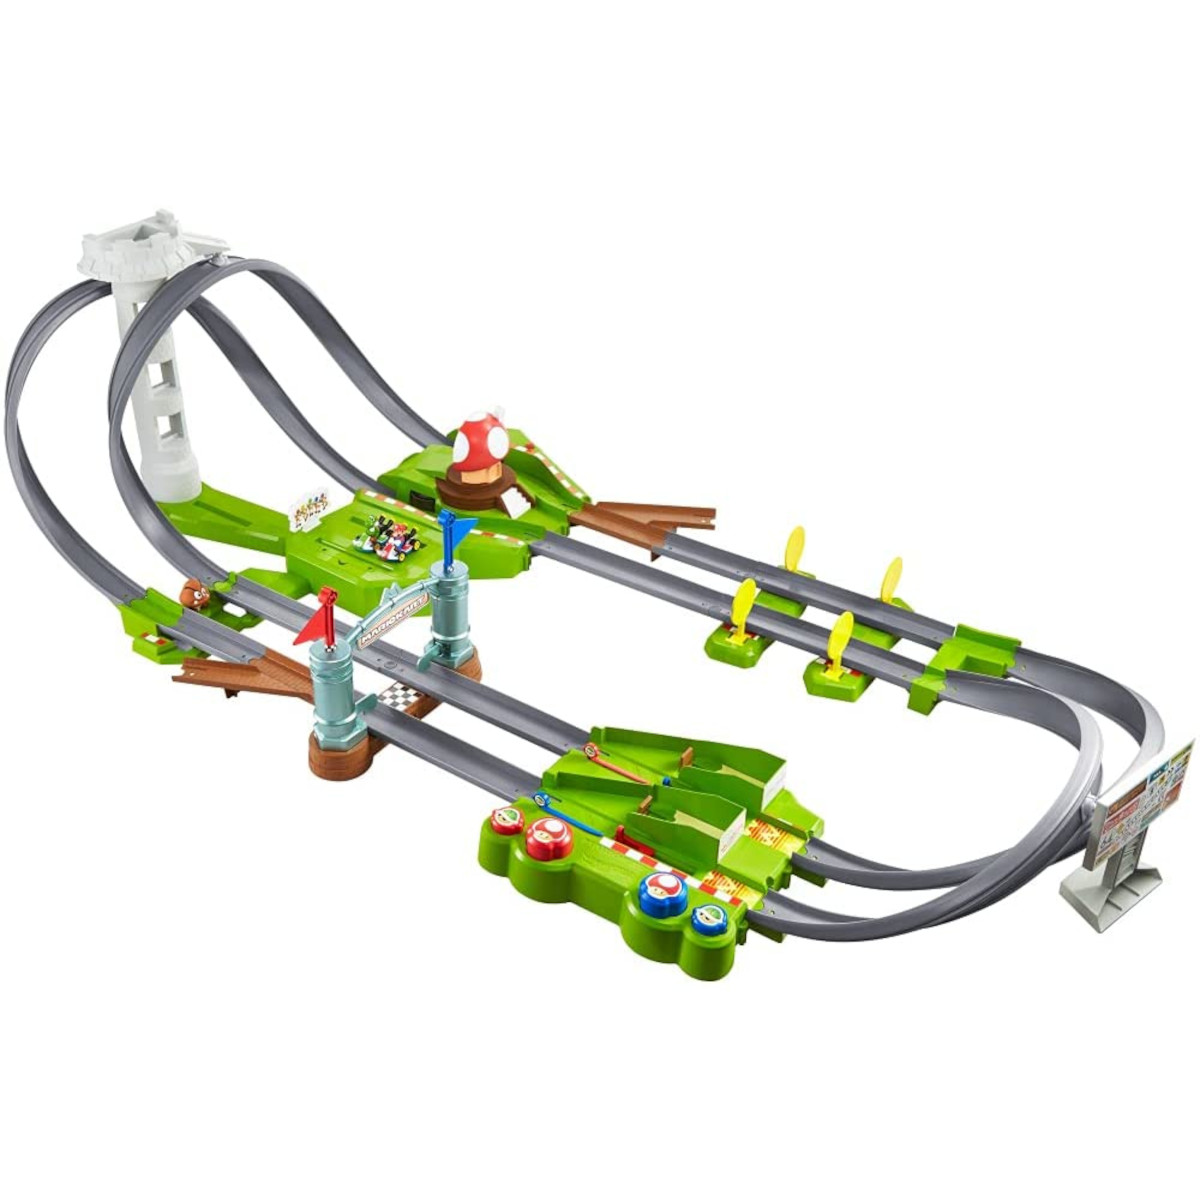 MATTEL Hot Wheels - 2 Kart Spielzeugautos Rennbahn inkl. Spielzeugrennbahn Mario